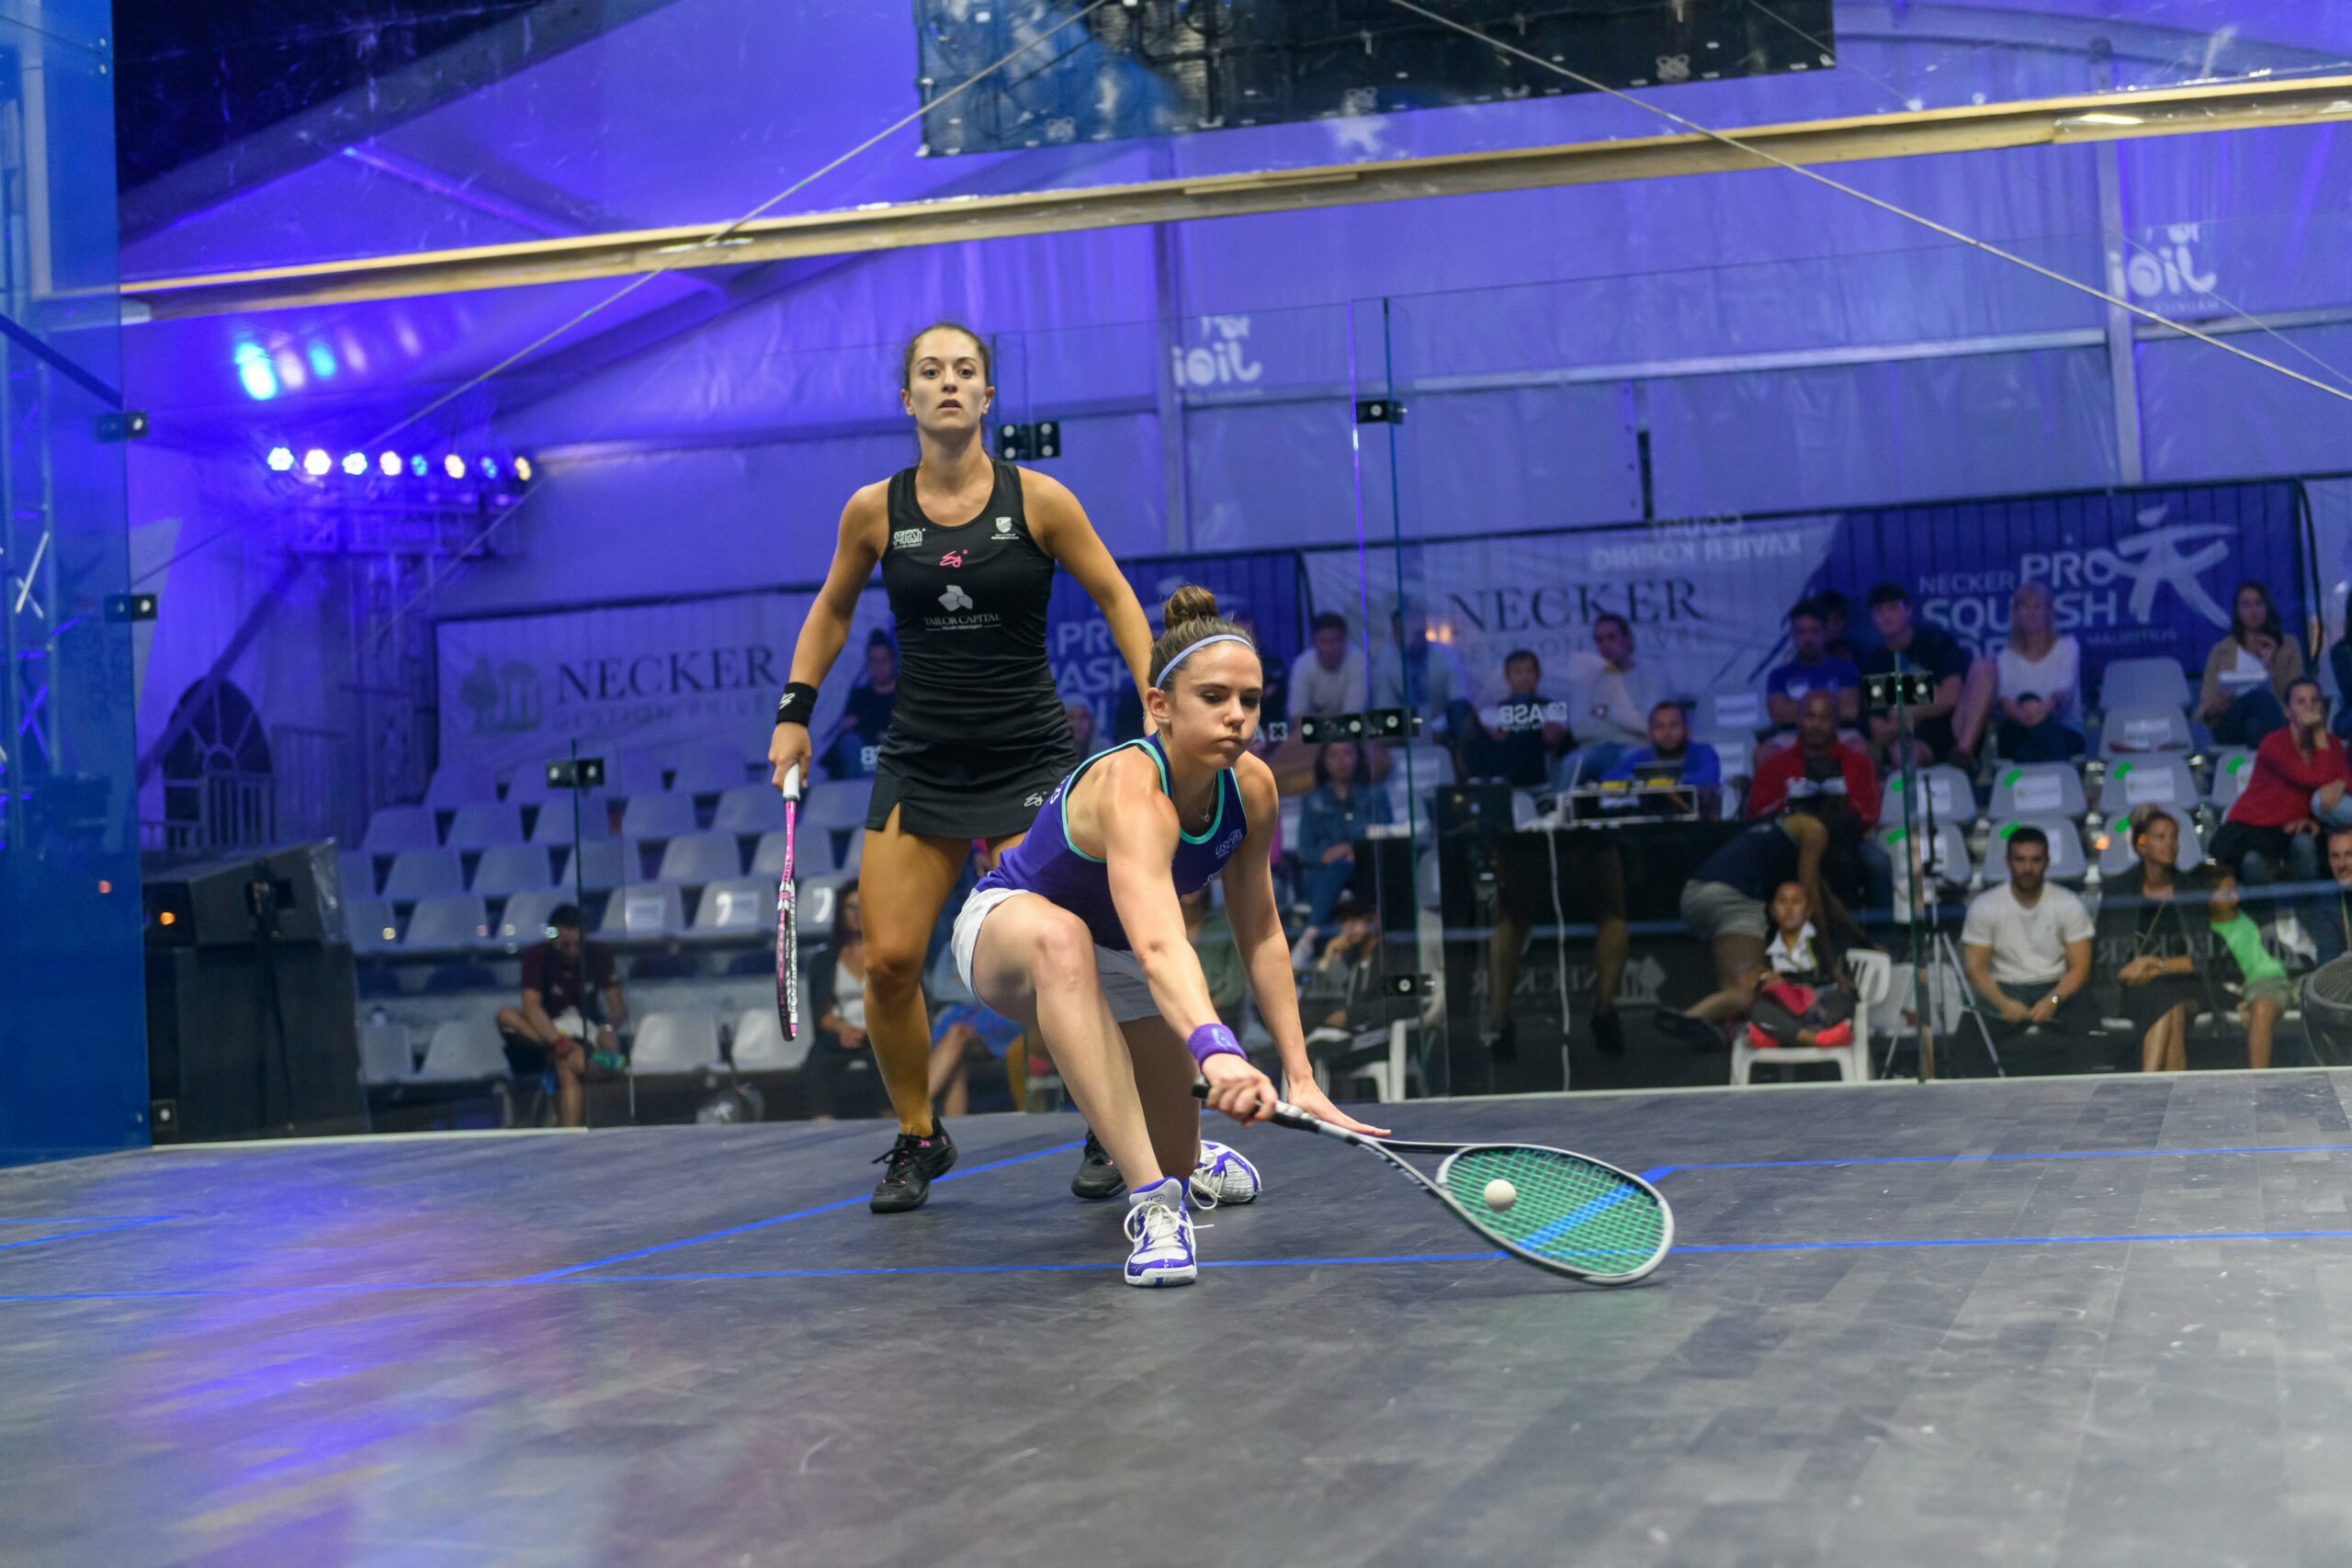 Le RM Club accueille un des plus gros tournois mondiaux de squash